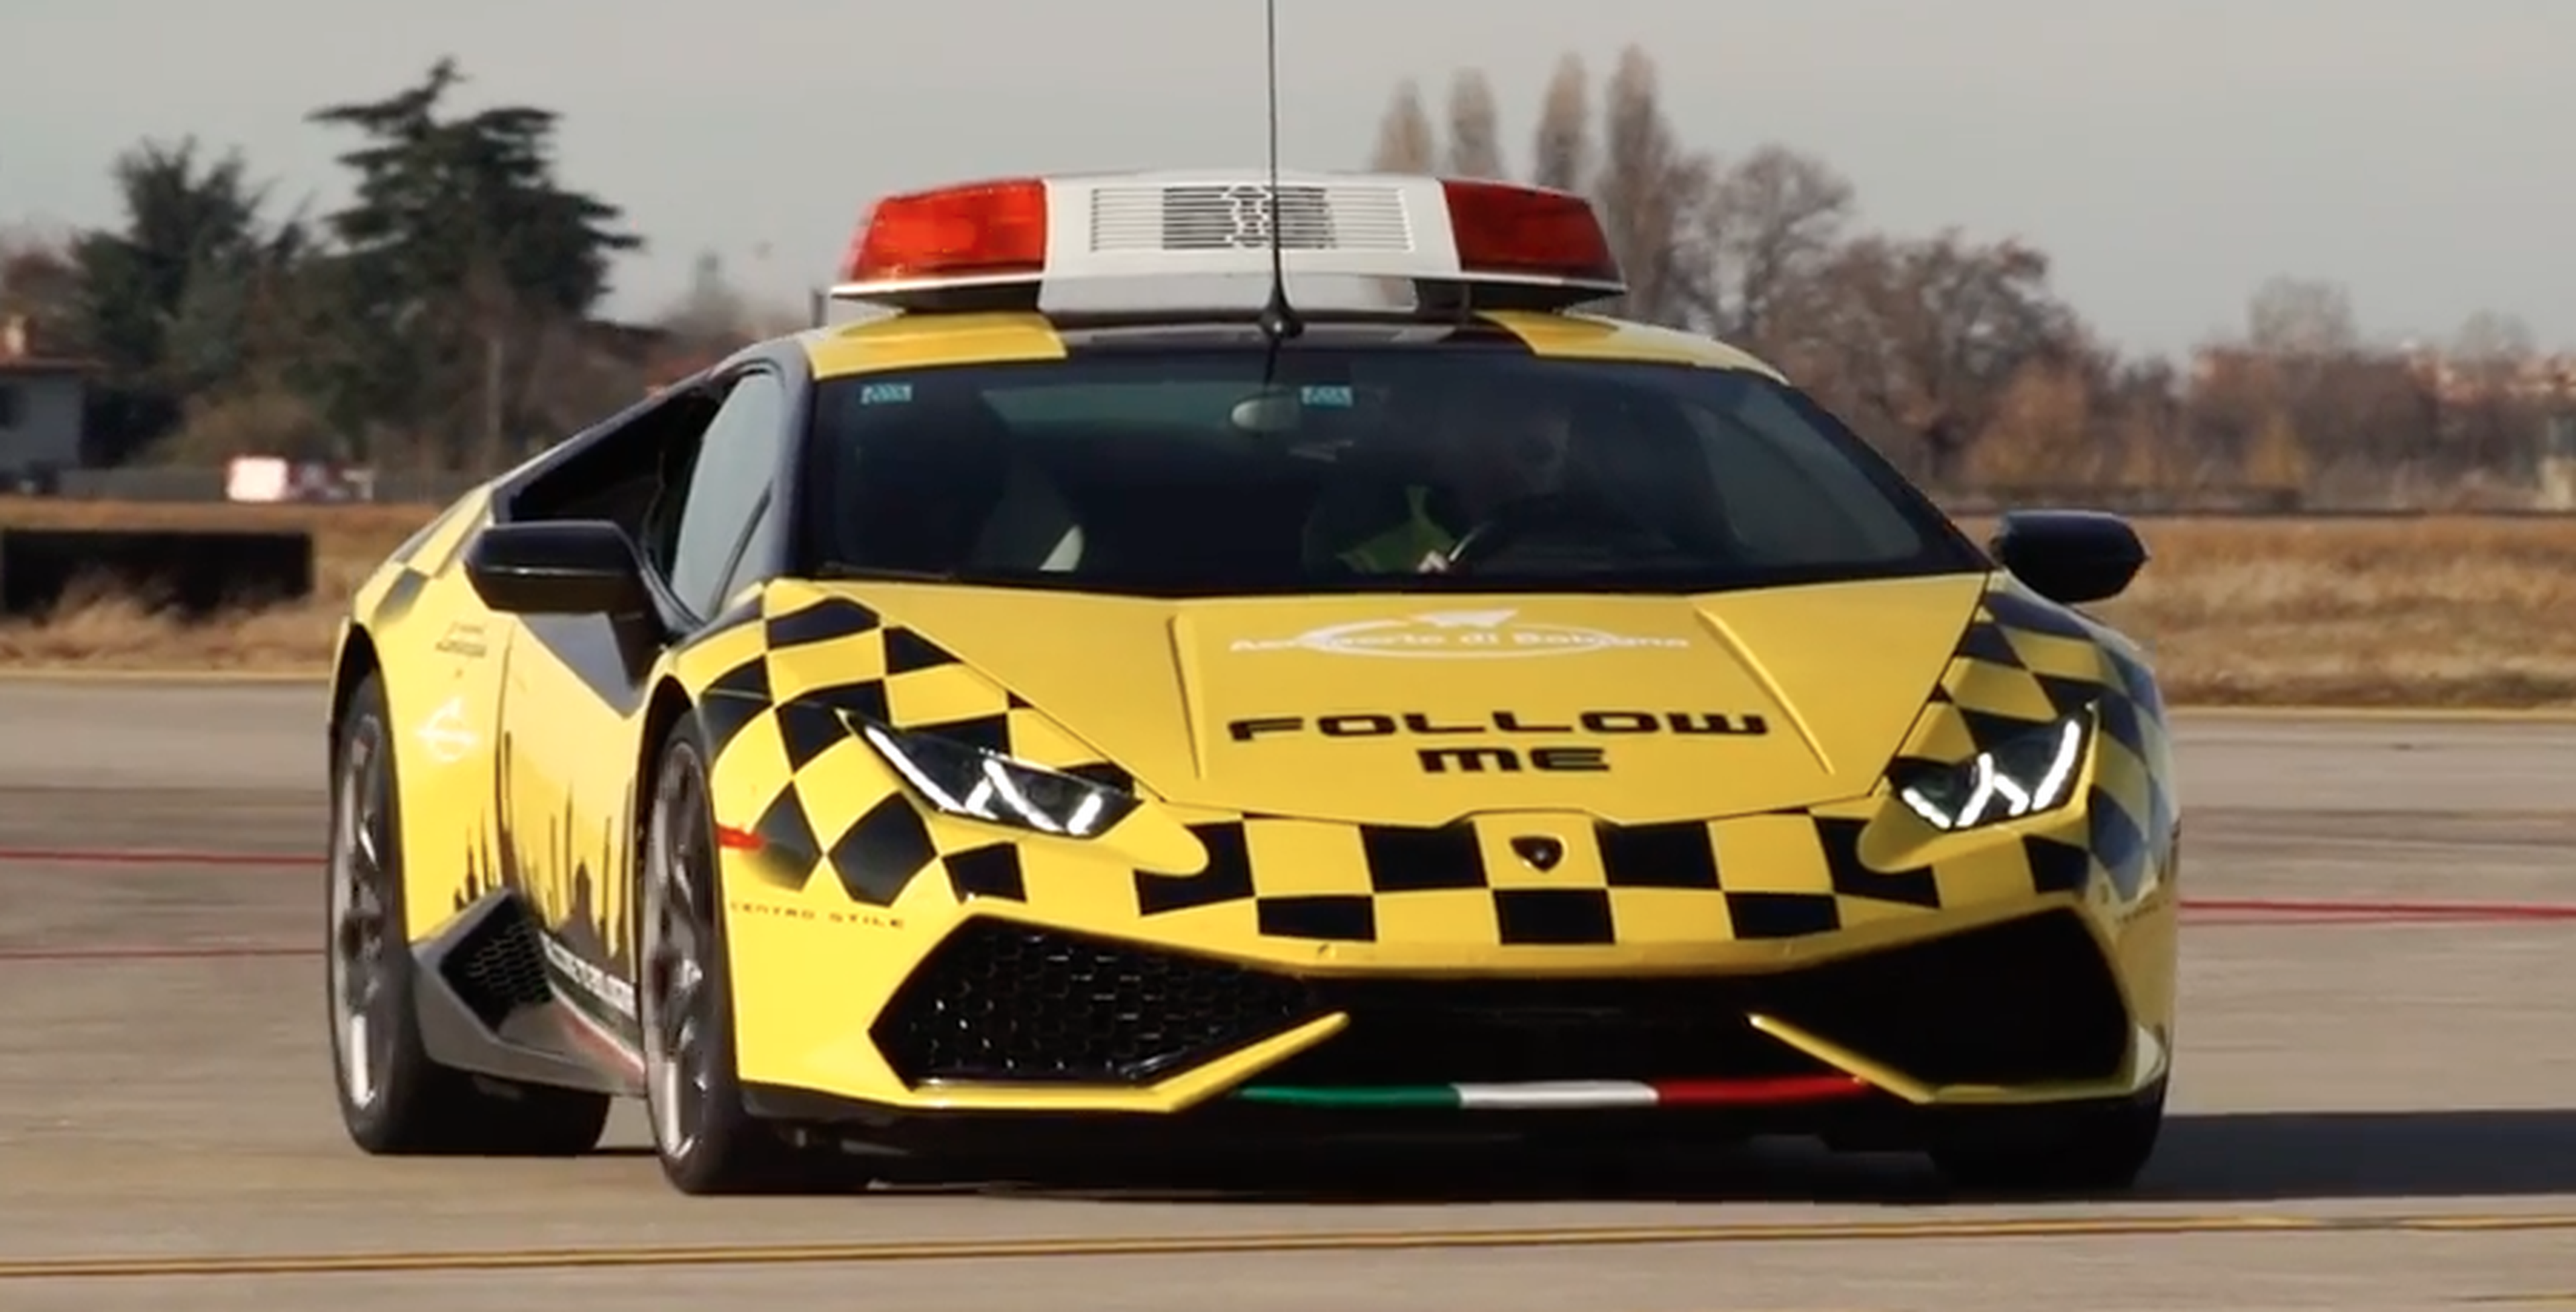 VÍDEO: ¿Un Lamborghini Huracán convertido en Follow Me?